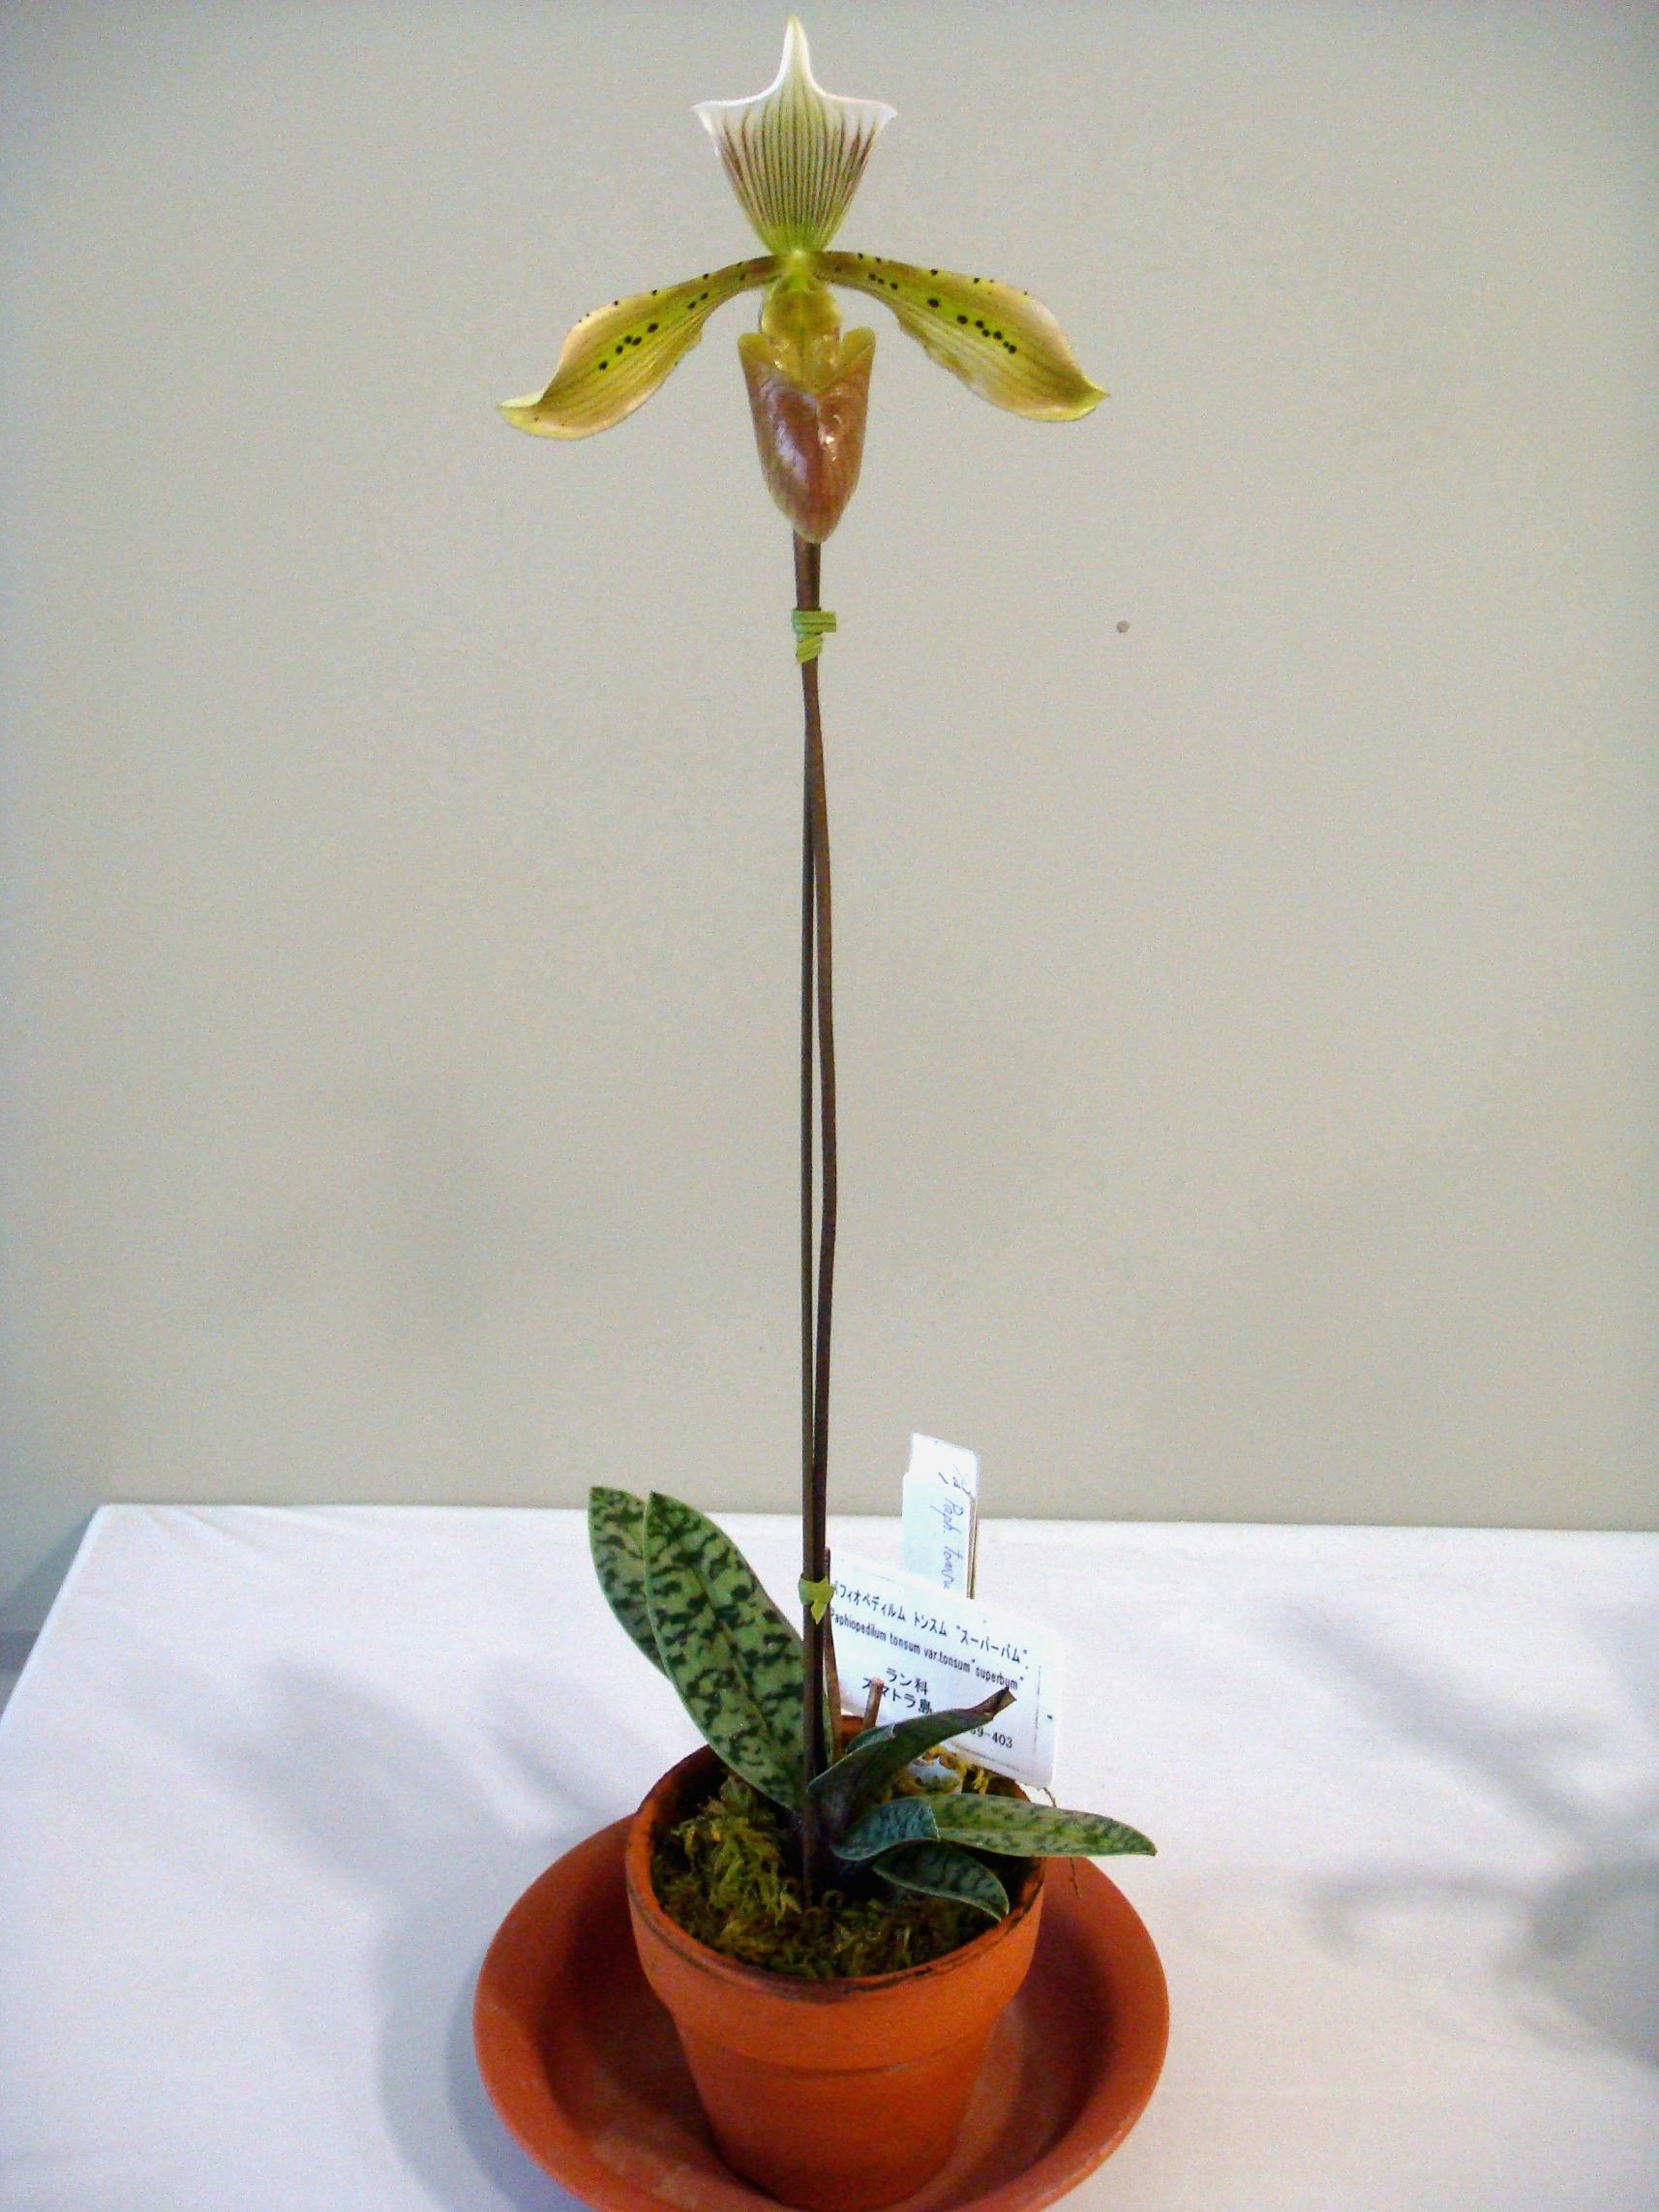 http://orchids.la.coocan.jp/Paphiopedilum/Paphiopedilum%20tonsum/DSC04414.JPG